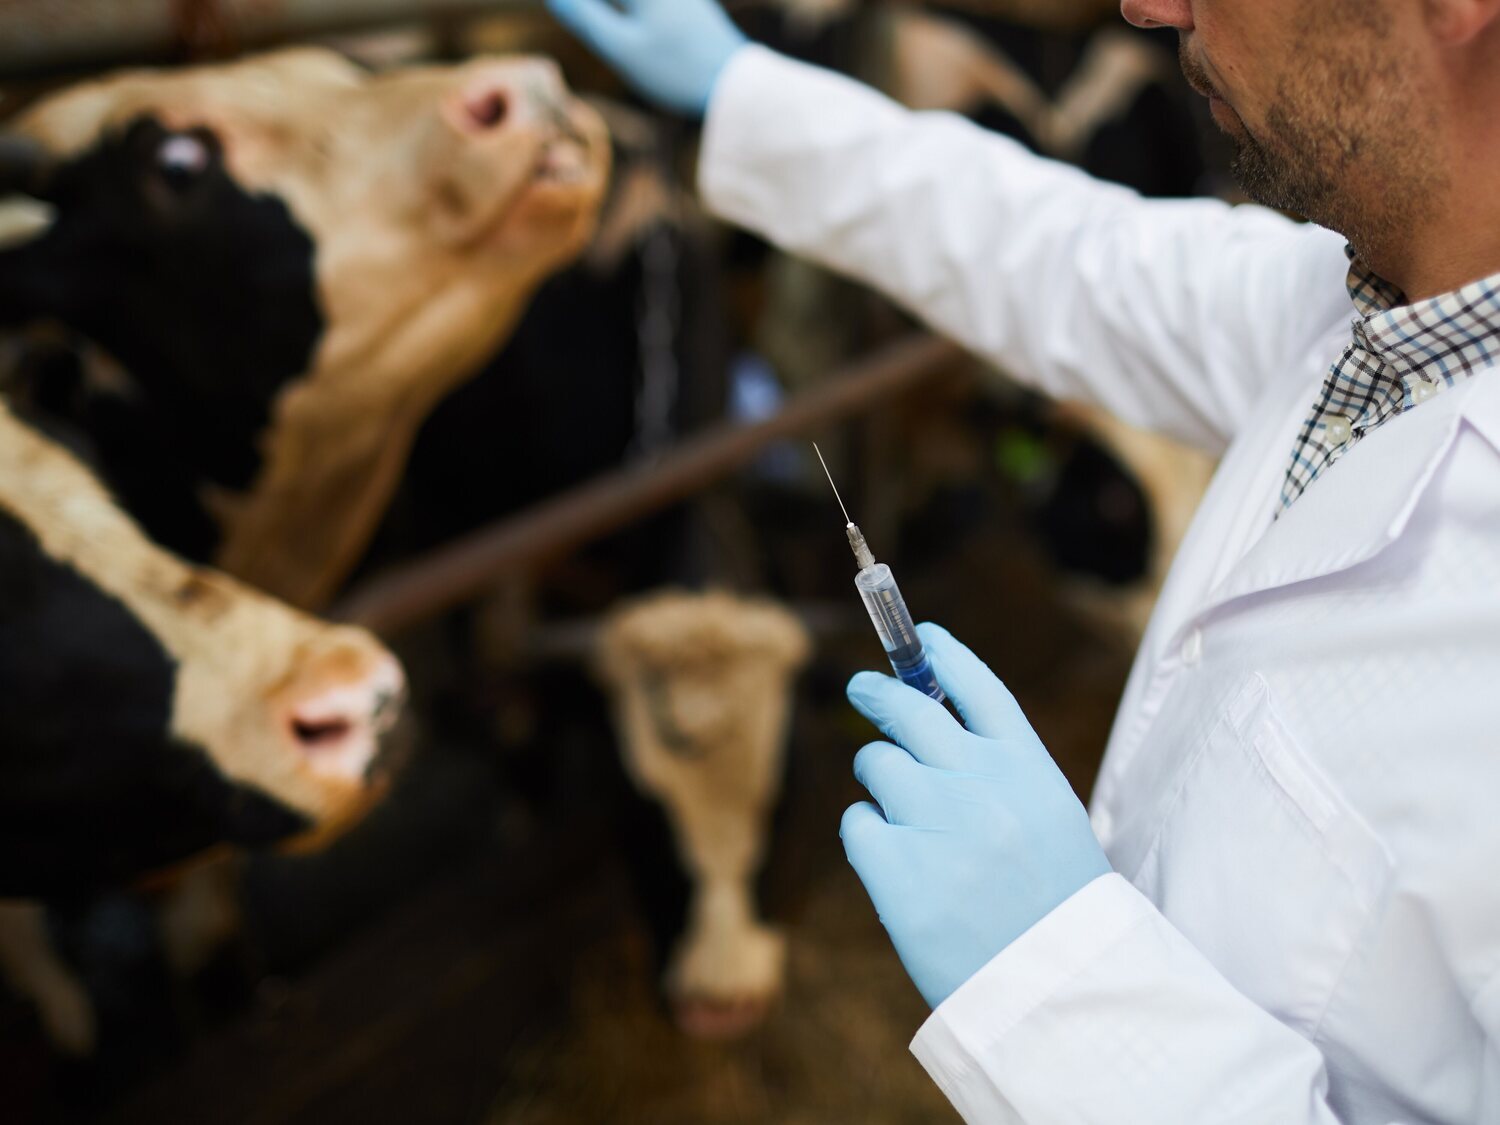 Condenado un ganadero por inocular una bacteria a sus vacas para cobrar una indemnización por su sacrificio